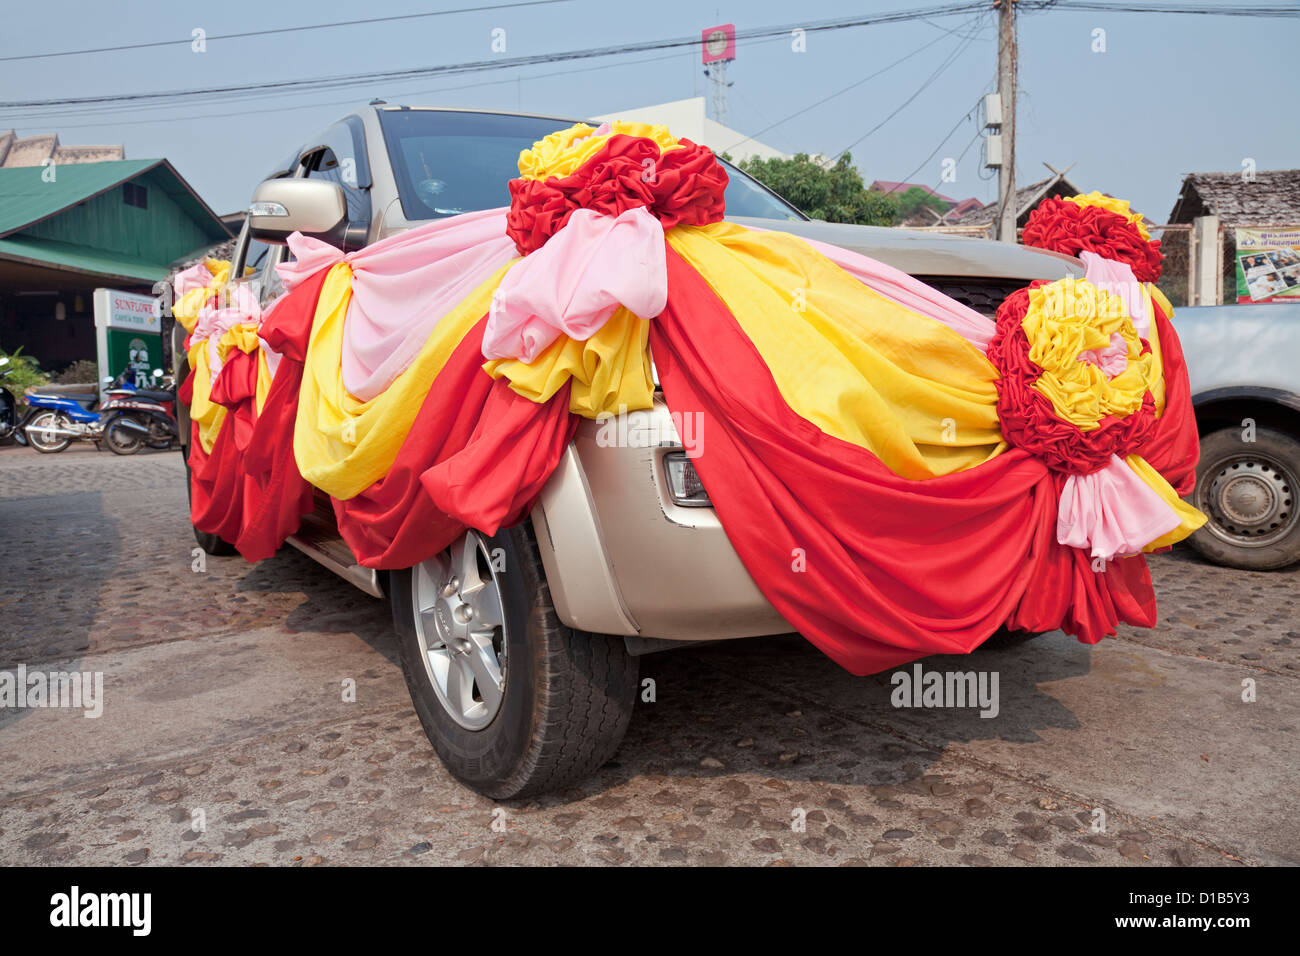 Vehículo de pasajeros decoradas para celebrar "Poy cantó largo' Festival, Mae Hong Son, Tailandia Foto de stock